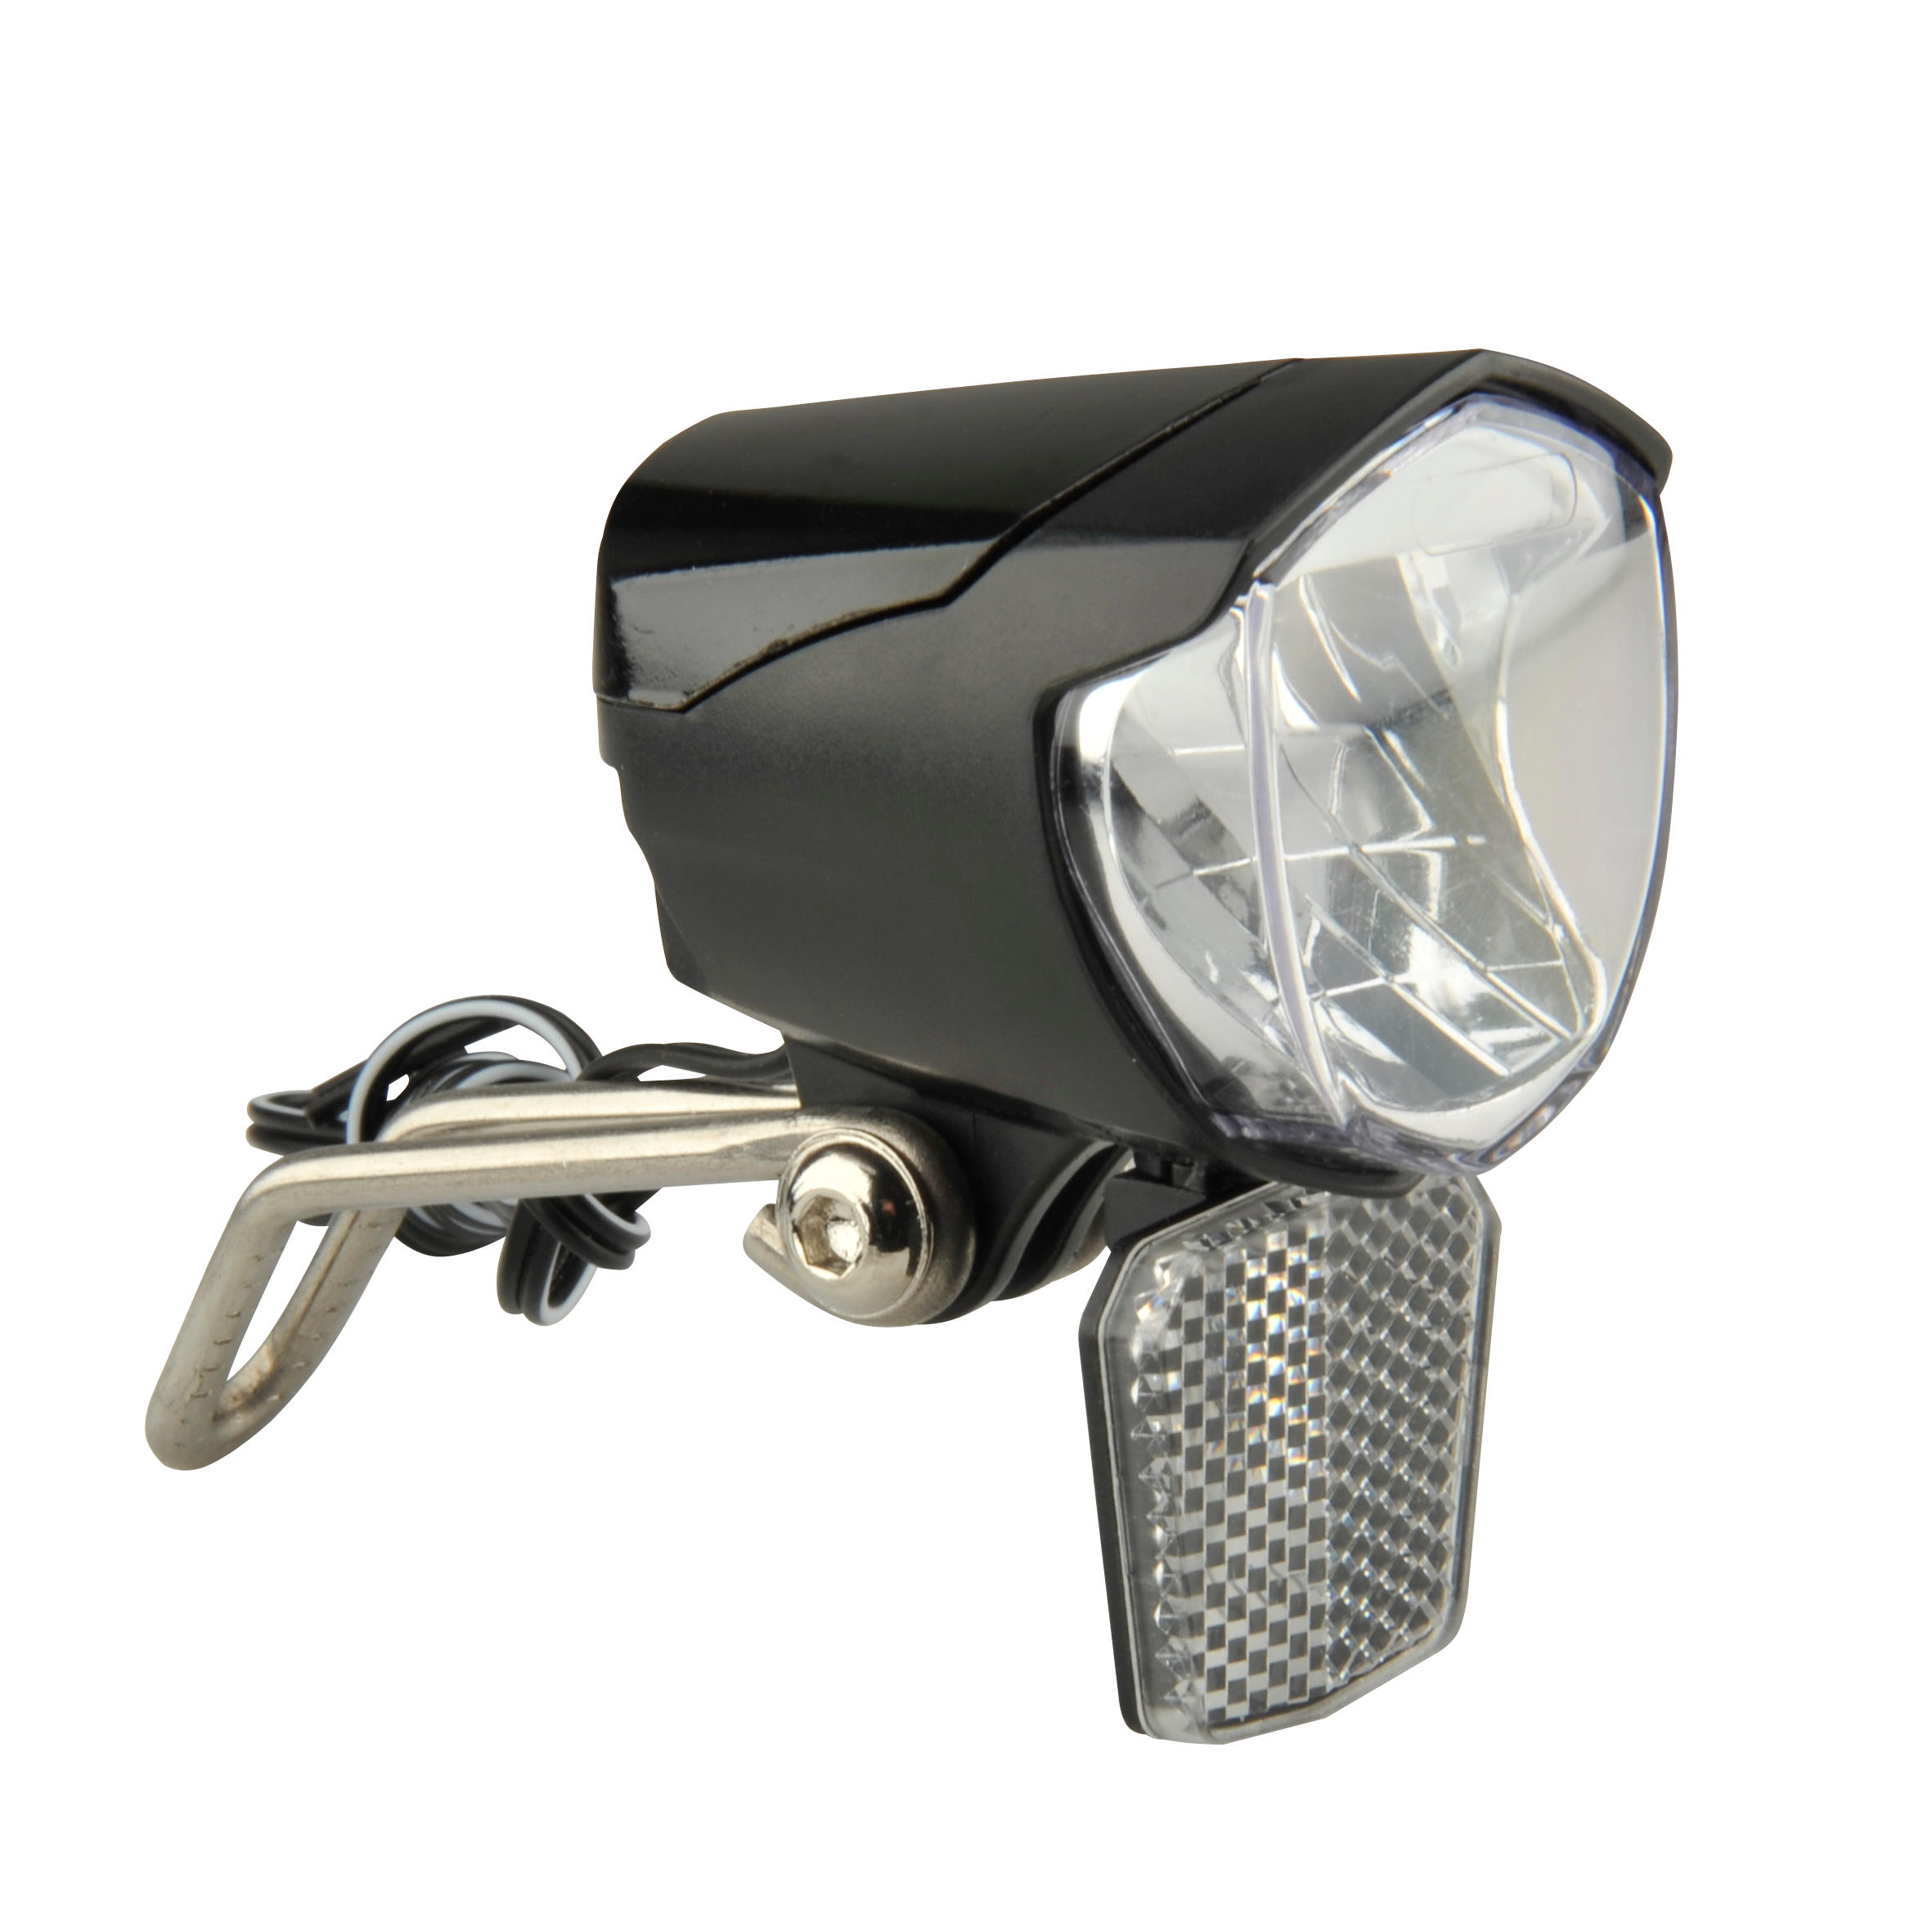 Fahrradbeleuchtung Frontlicht LED 70 Lux Dynamobetrieb